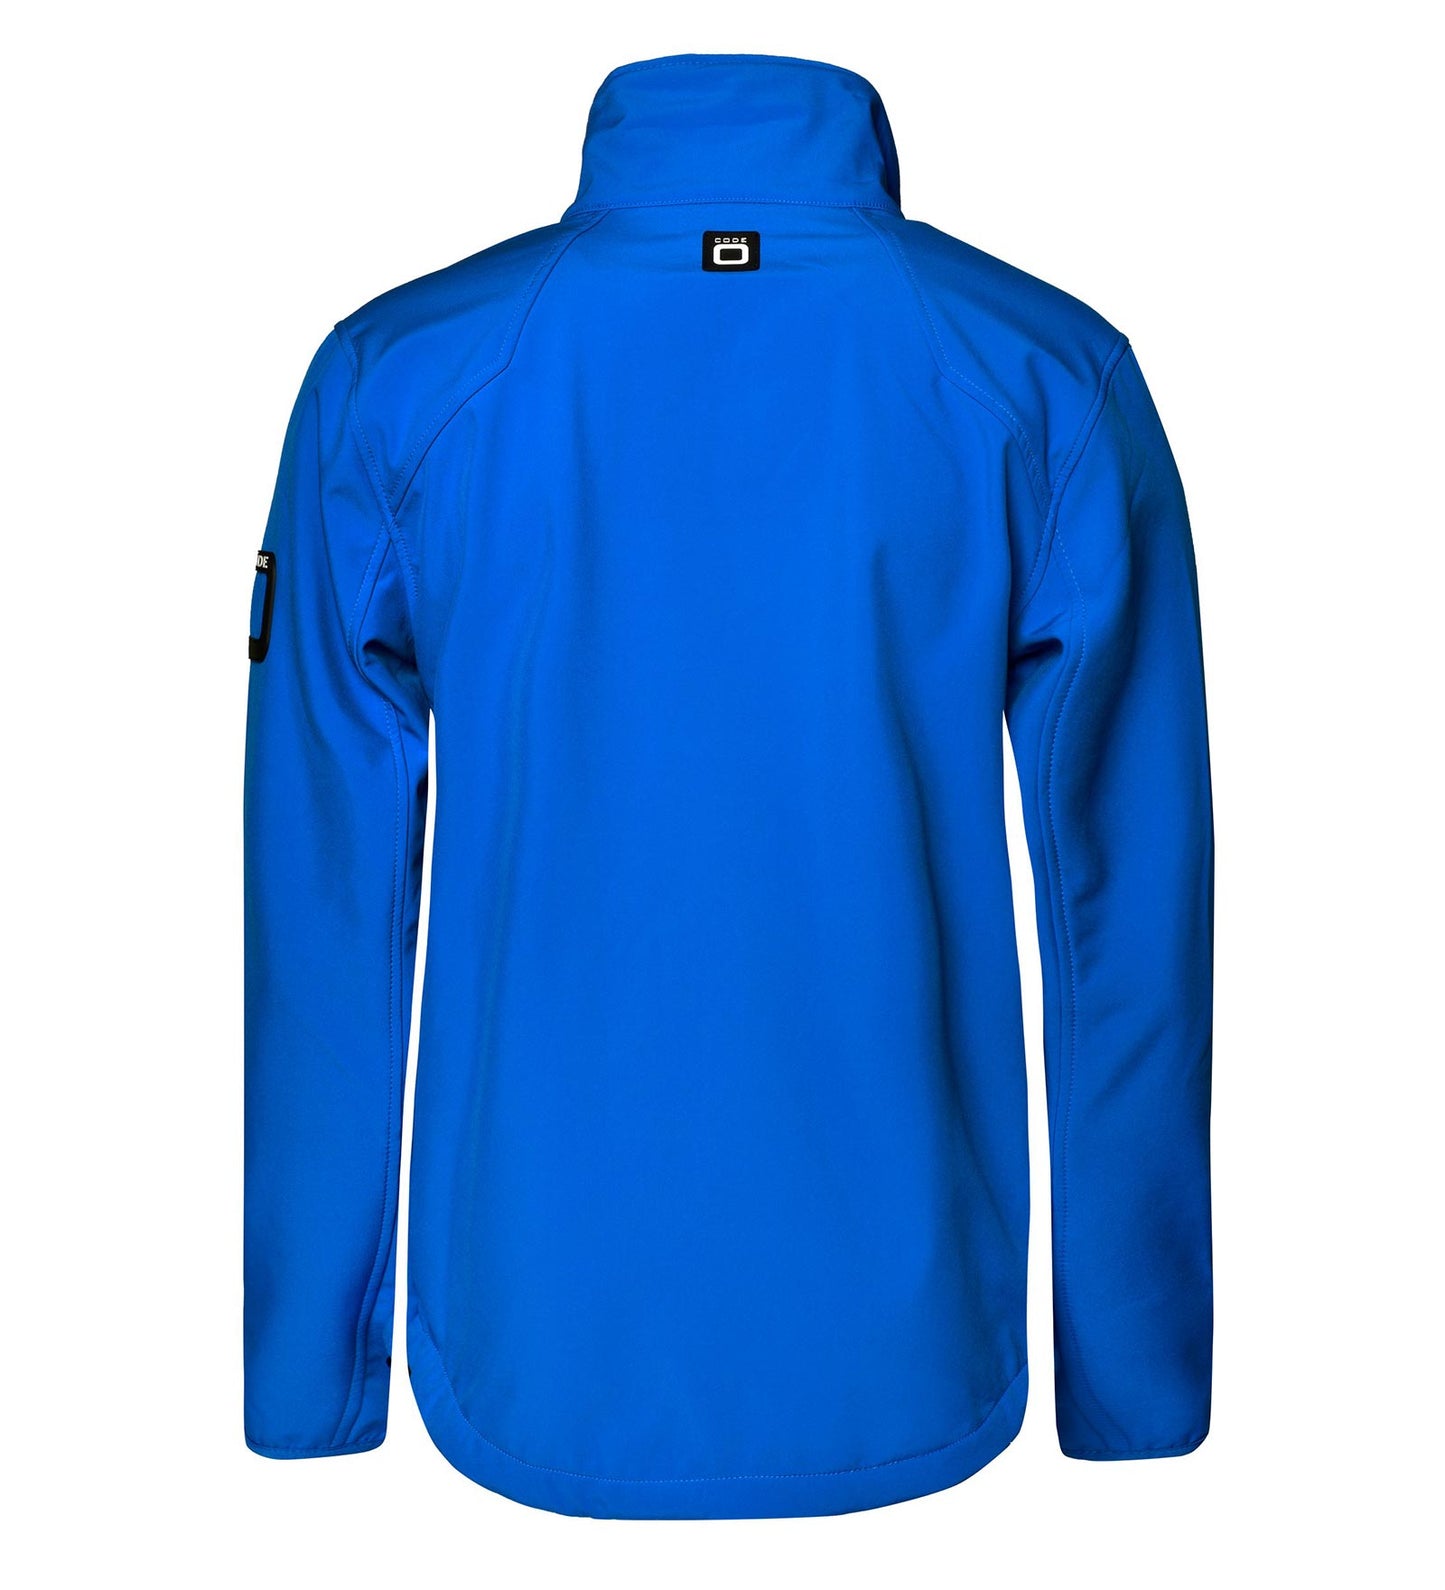 Vīriešu softshell jaka Halyard, Skydiver Blue krāsa (C42)